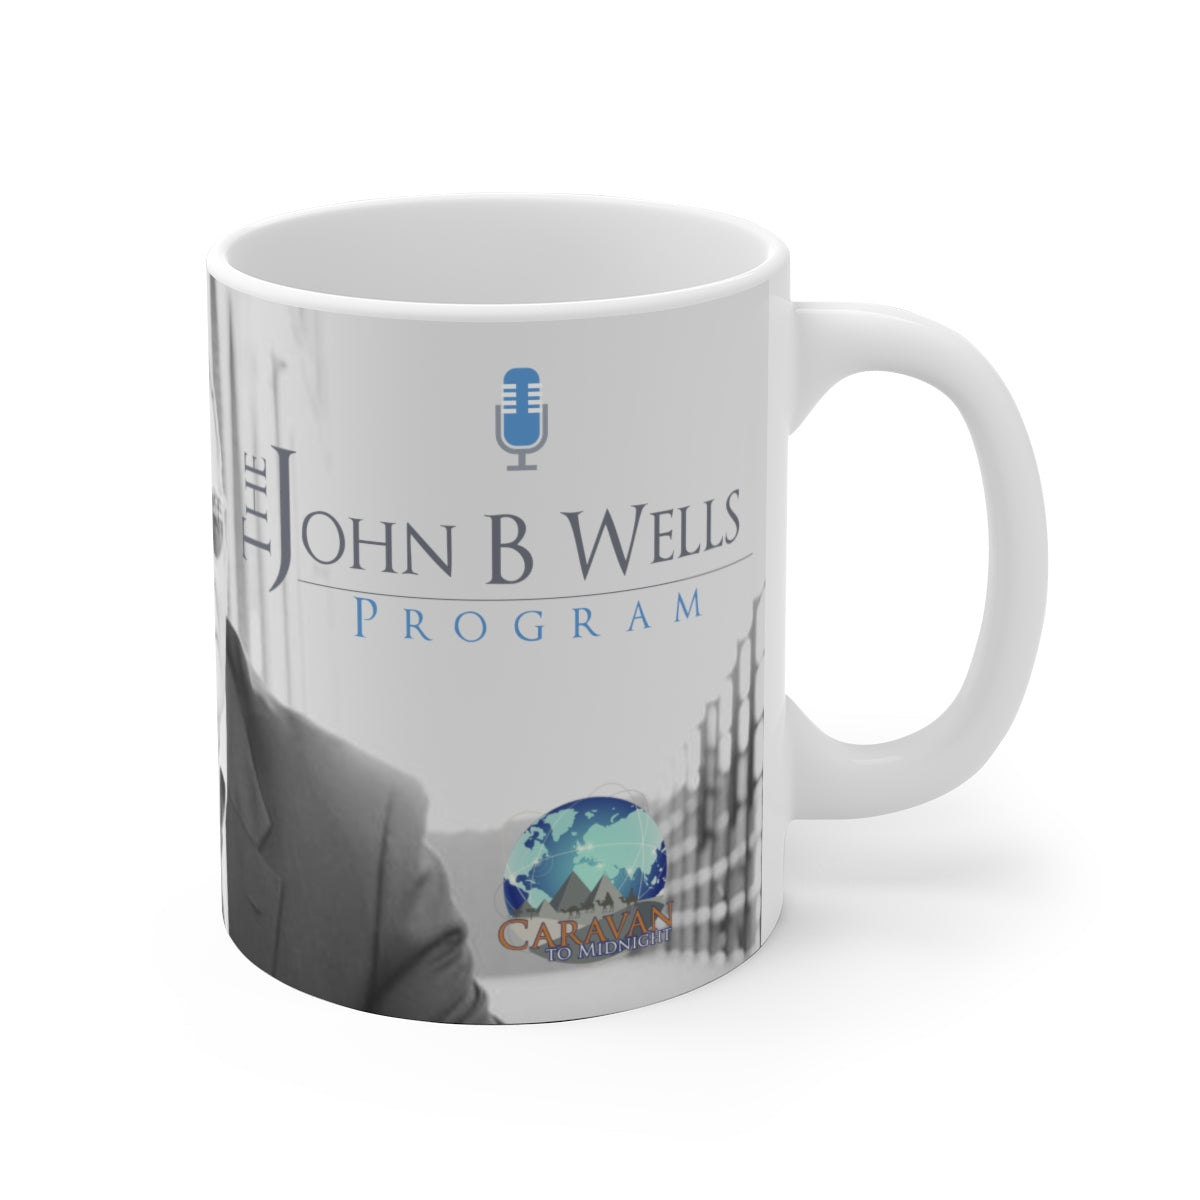 Signed John B Wells Mug